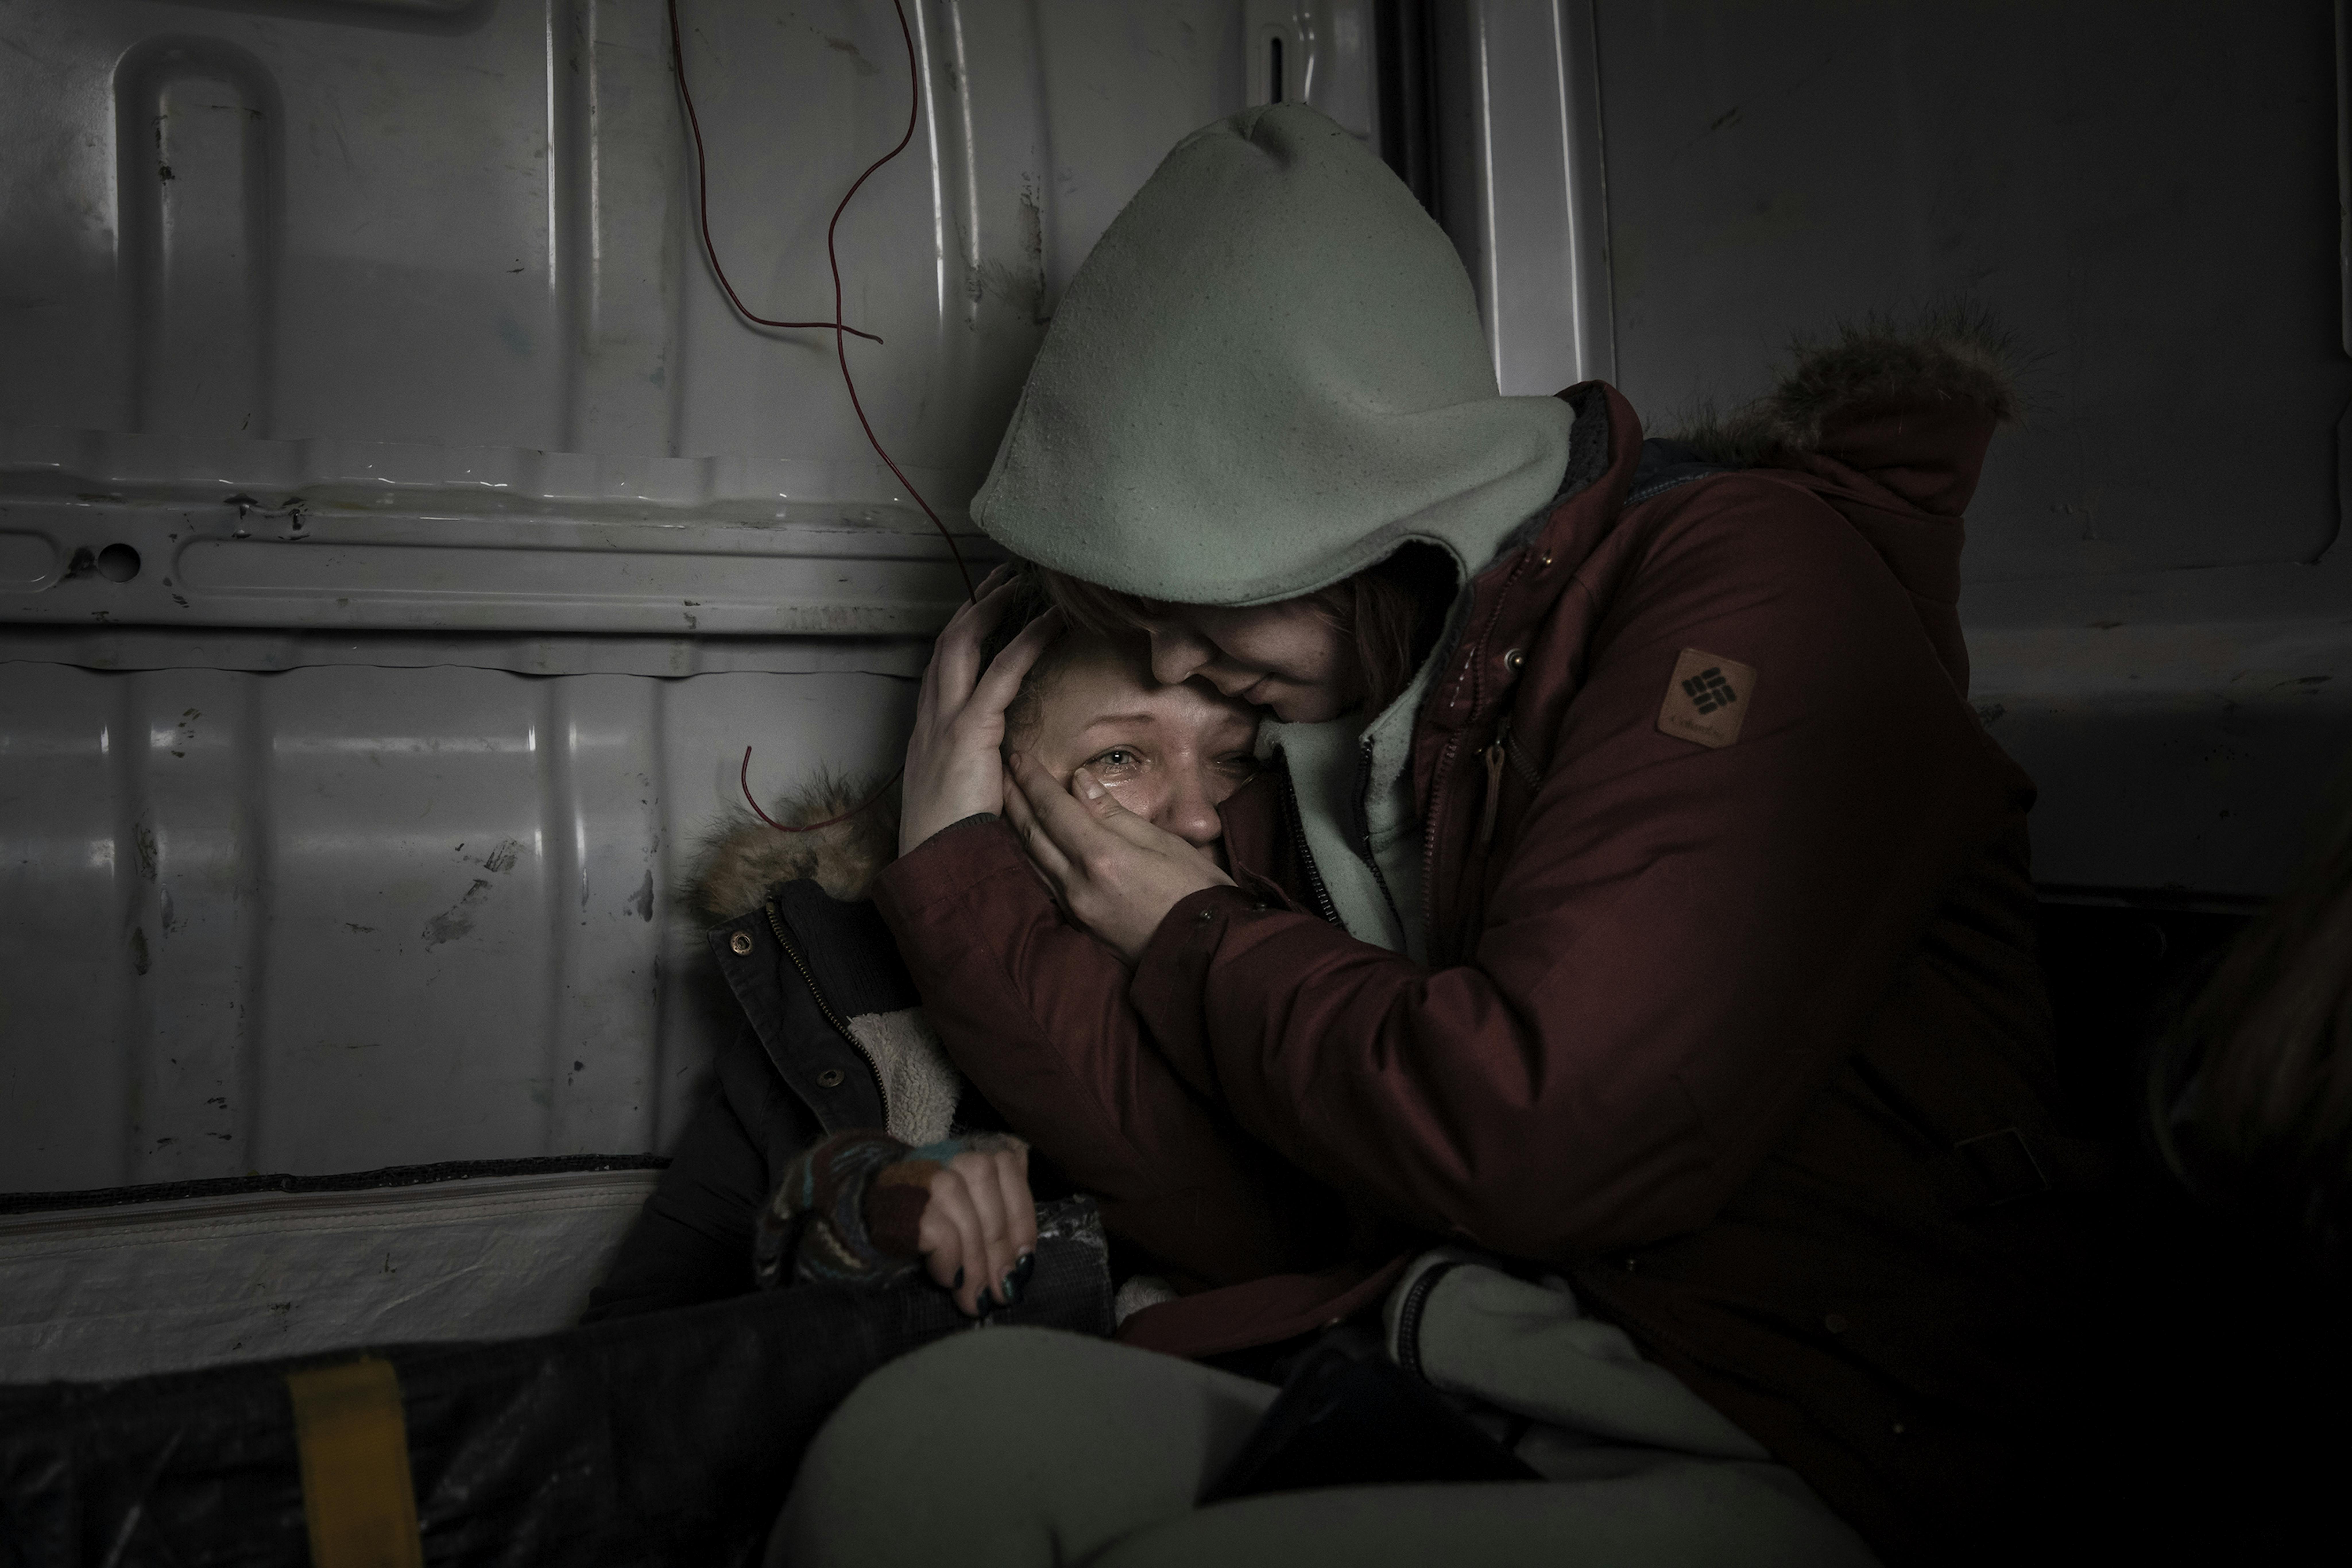 © Fabio Bucciarelli, Italy- Stress tossico (Ucraina): l'esperienza della violenza si propaga come un veleno nell'anima dei bambini. Questa perenne condizione di paura è chiamata stress tossico